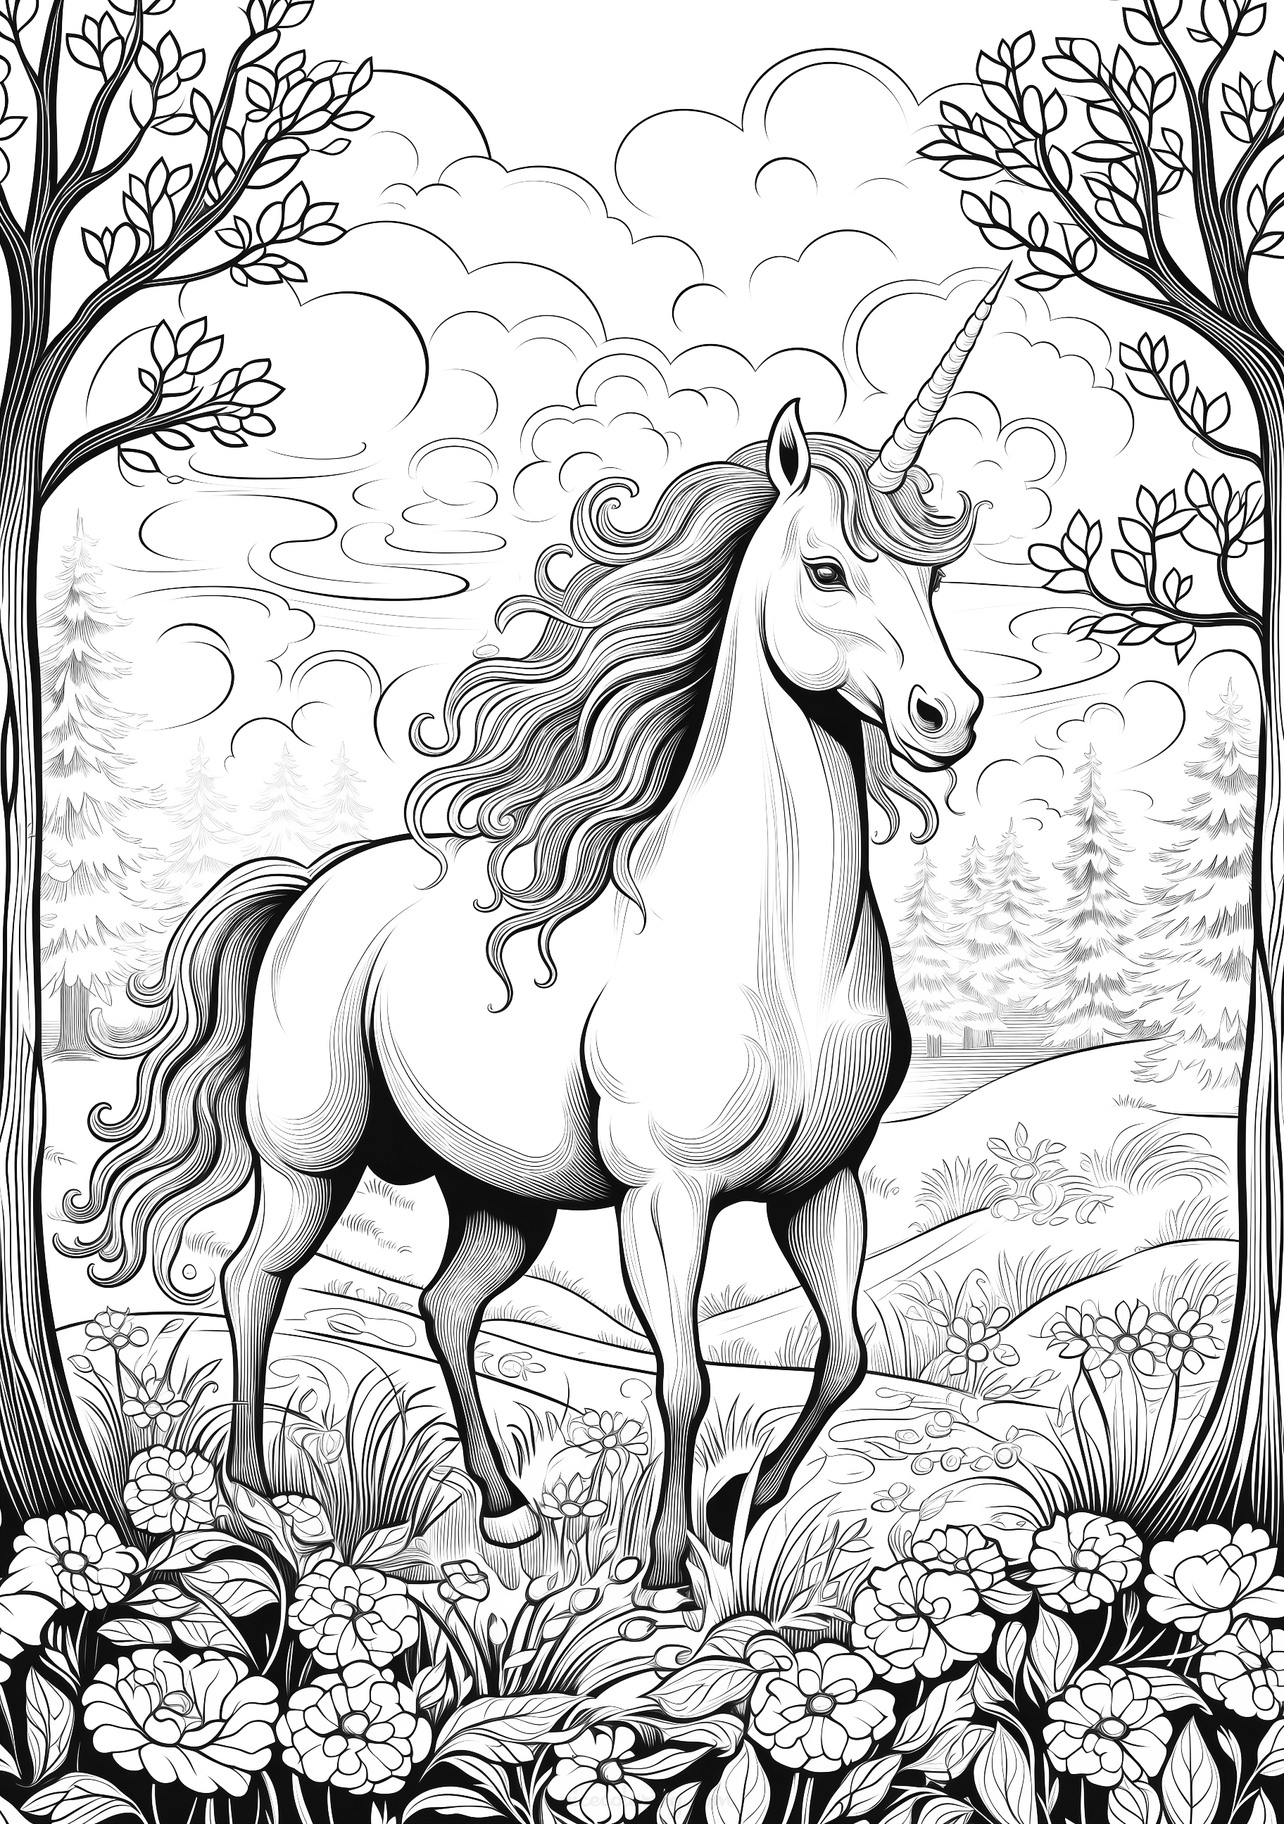 Página de colorear de unicornio mágico